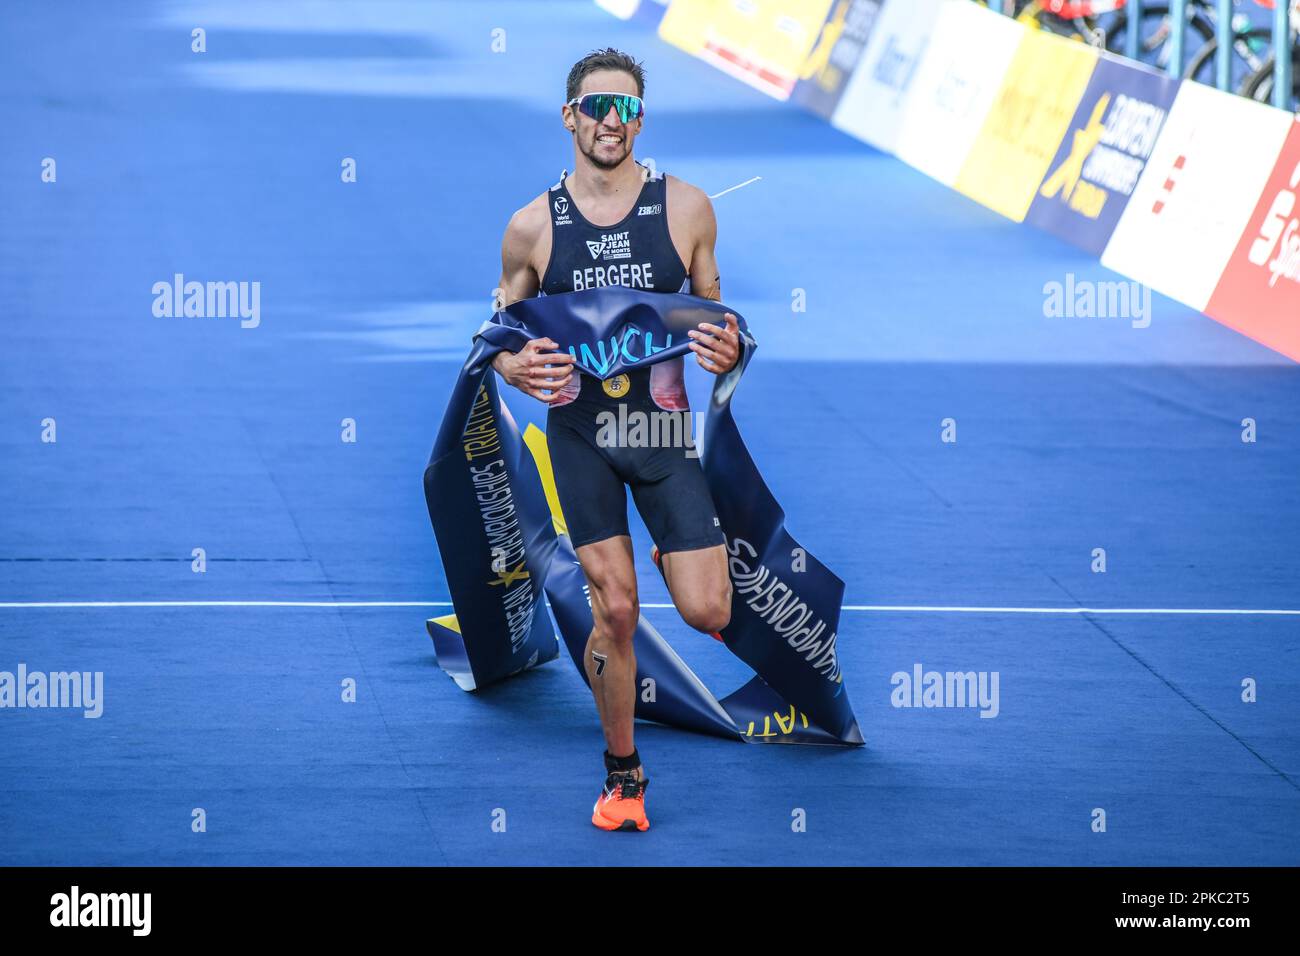 Leo Bergère (France, Médaille d'or), Triathlon Men. Championnats d'Europe Munich 2022 Banque D'Images